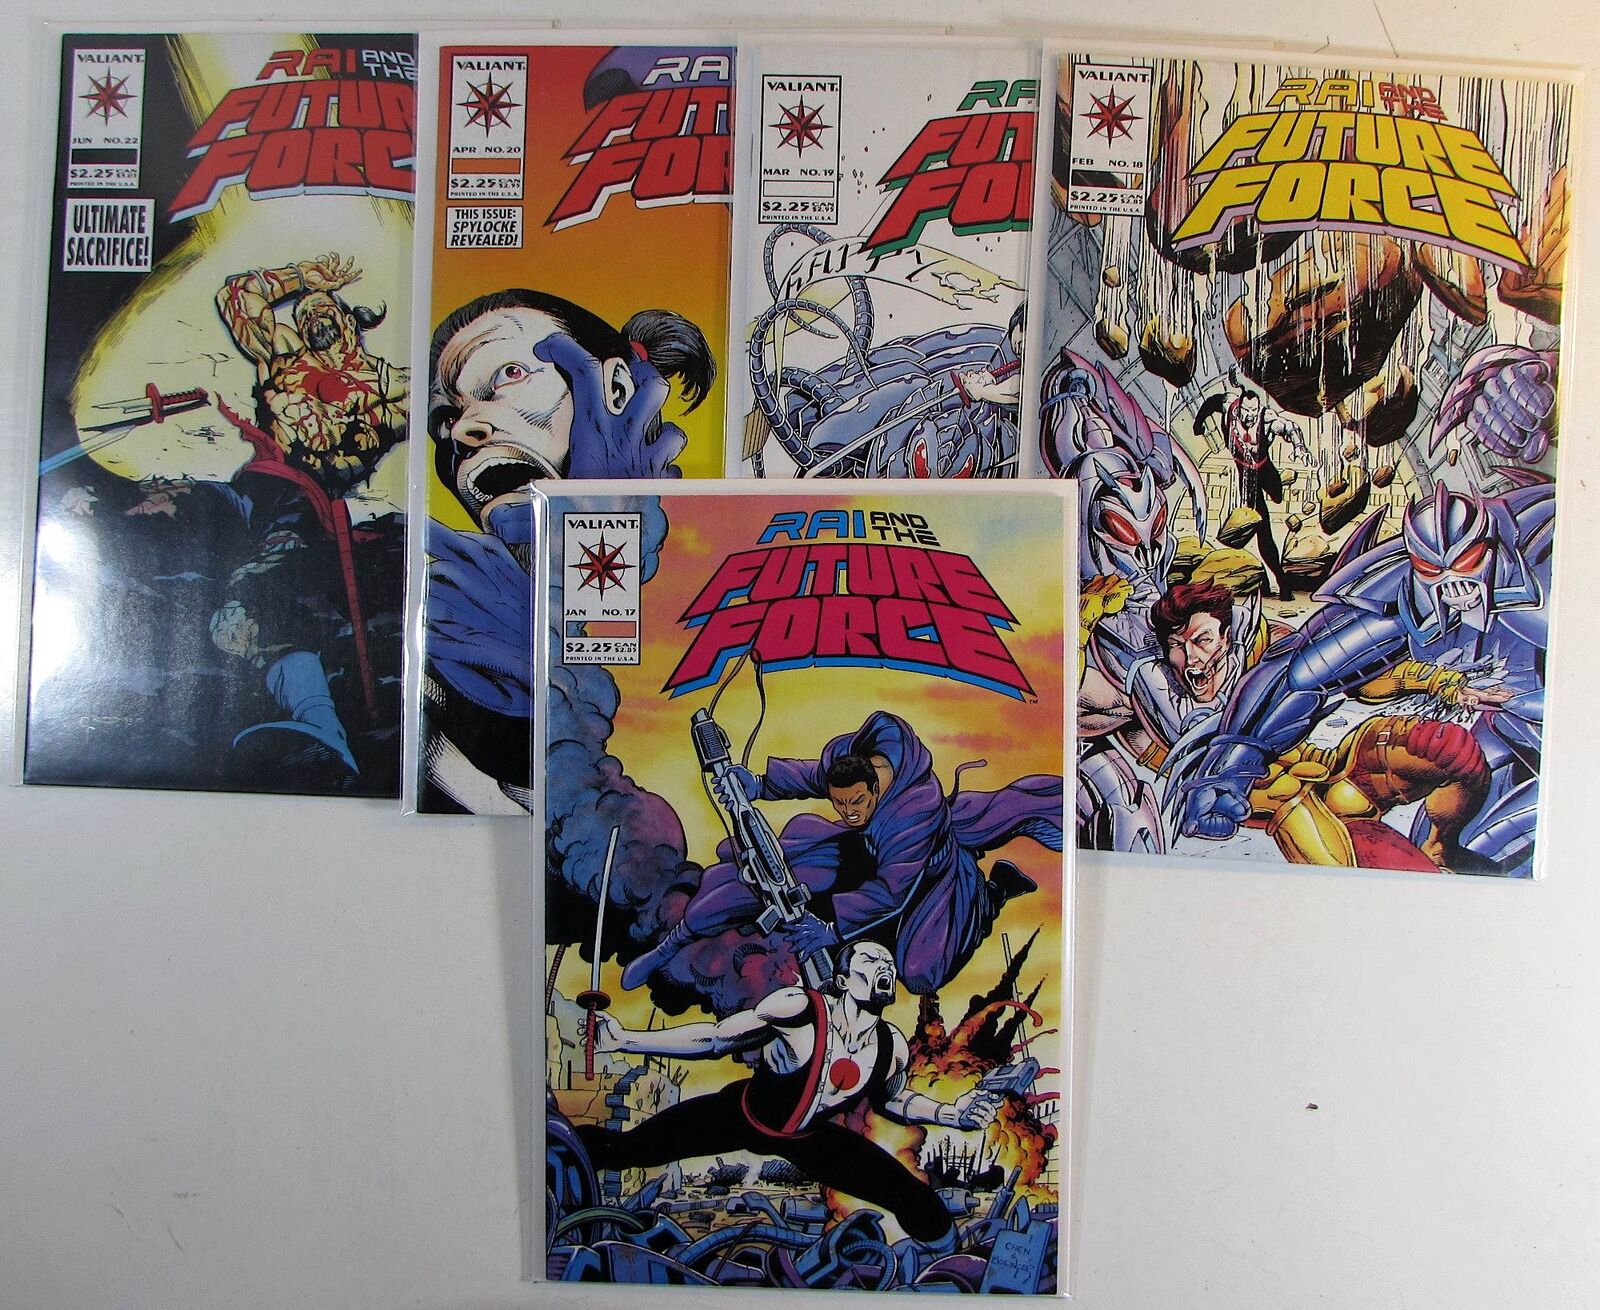 Rai And The Future Force Lot of 5 #17,18,19,20,22 Valiant (1994) Comics